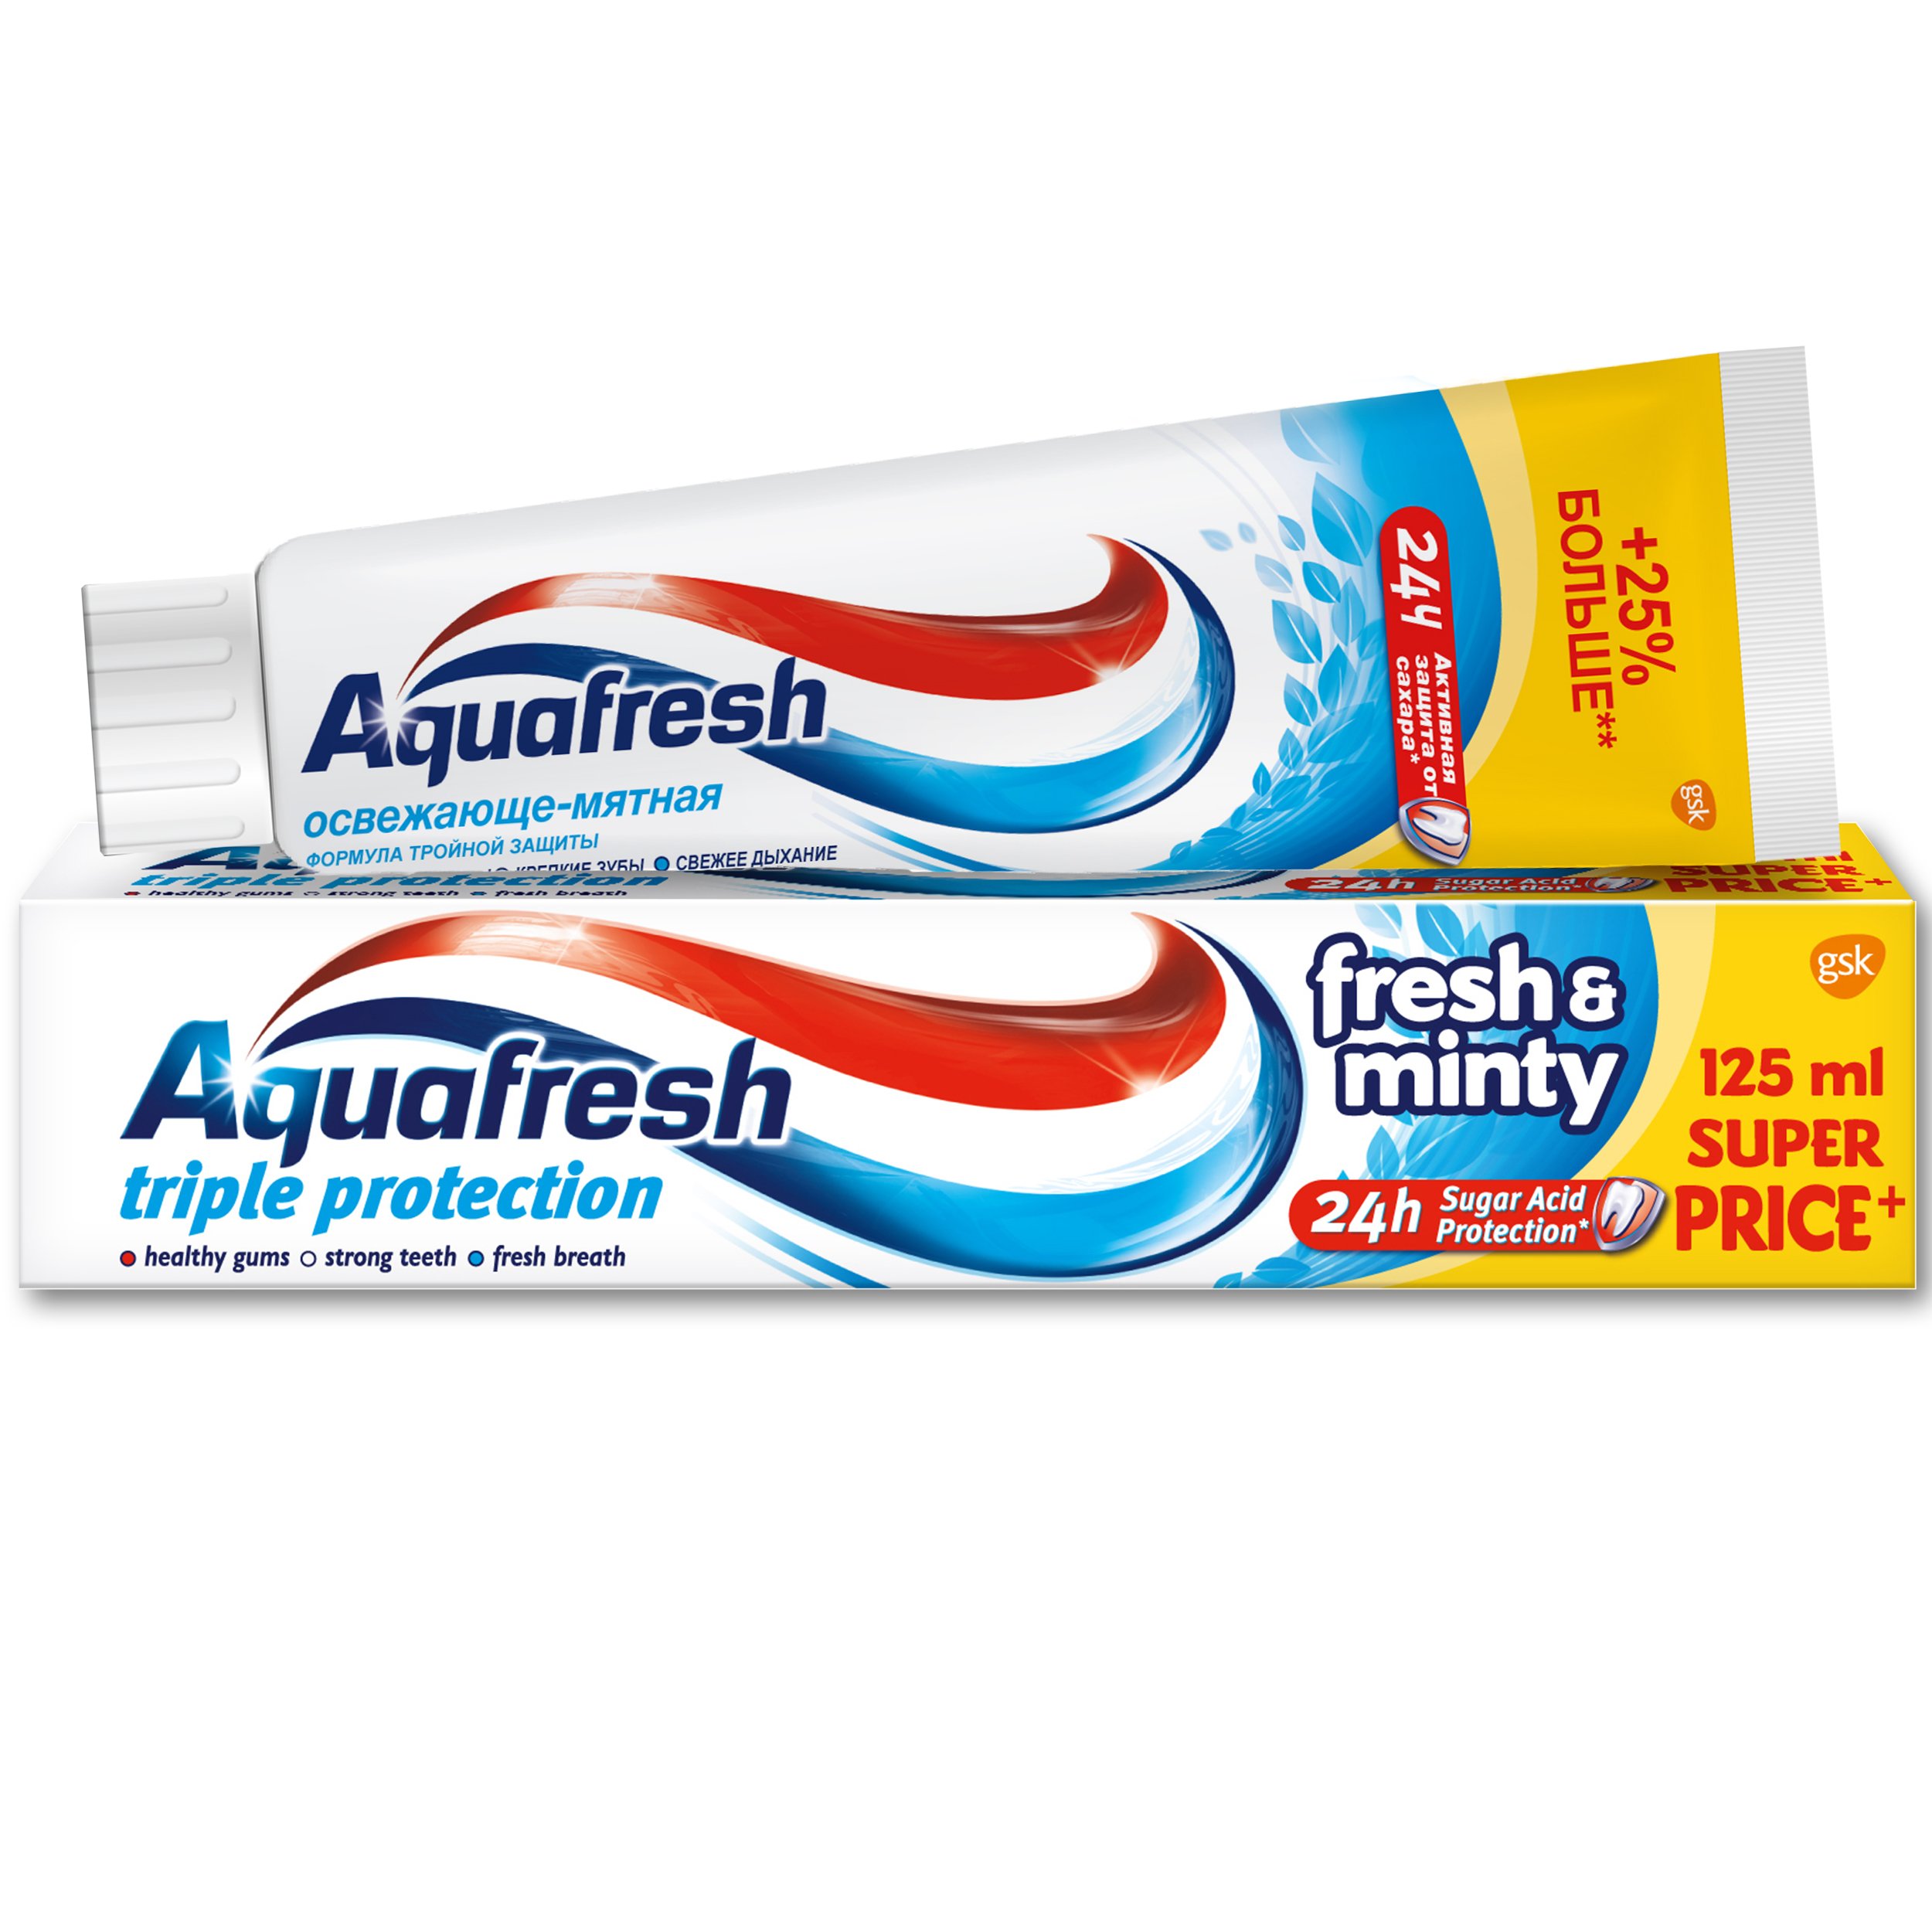 Зубная паста Aquafresh Освежающе-мятная тройная защита 125 мл - фото 2